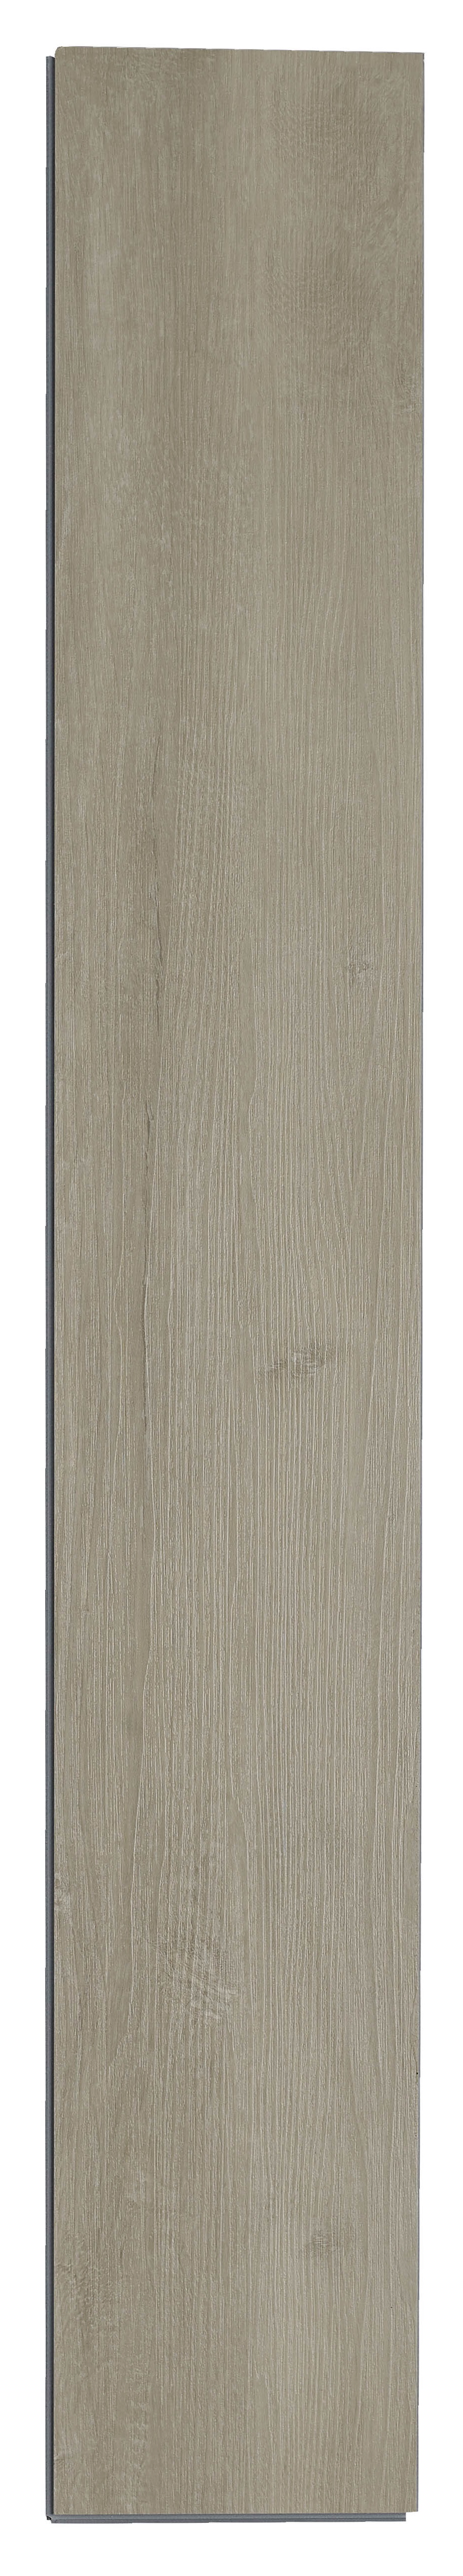 Russam Limed Light Oak SPC Flooring with Integrated Underlay - Sample